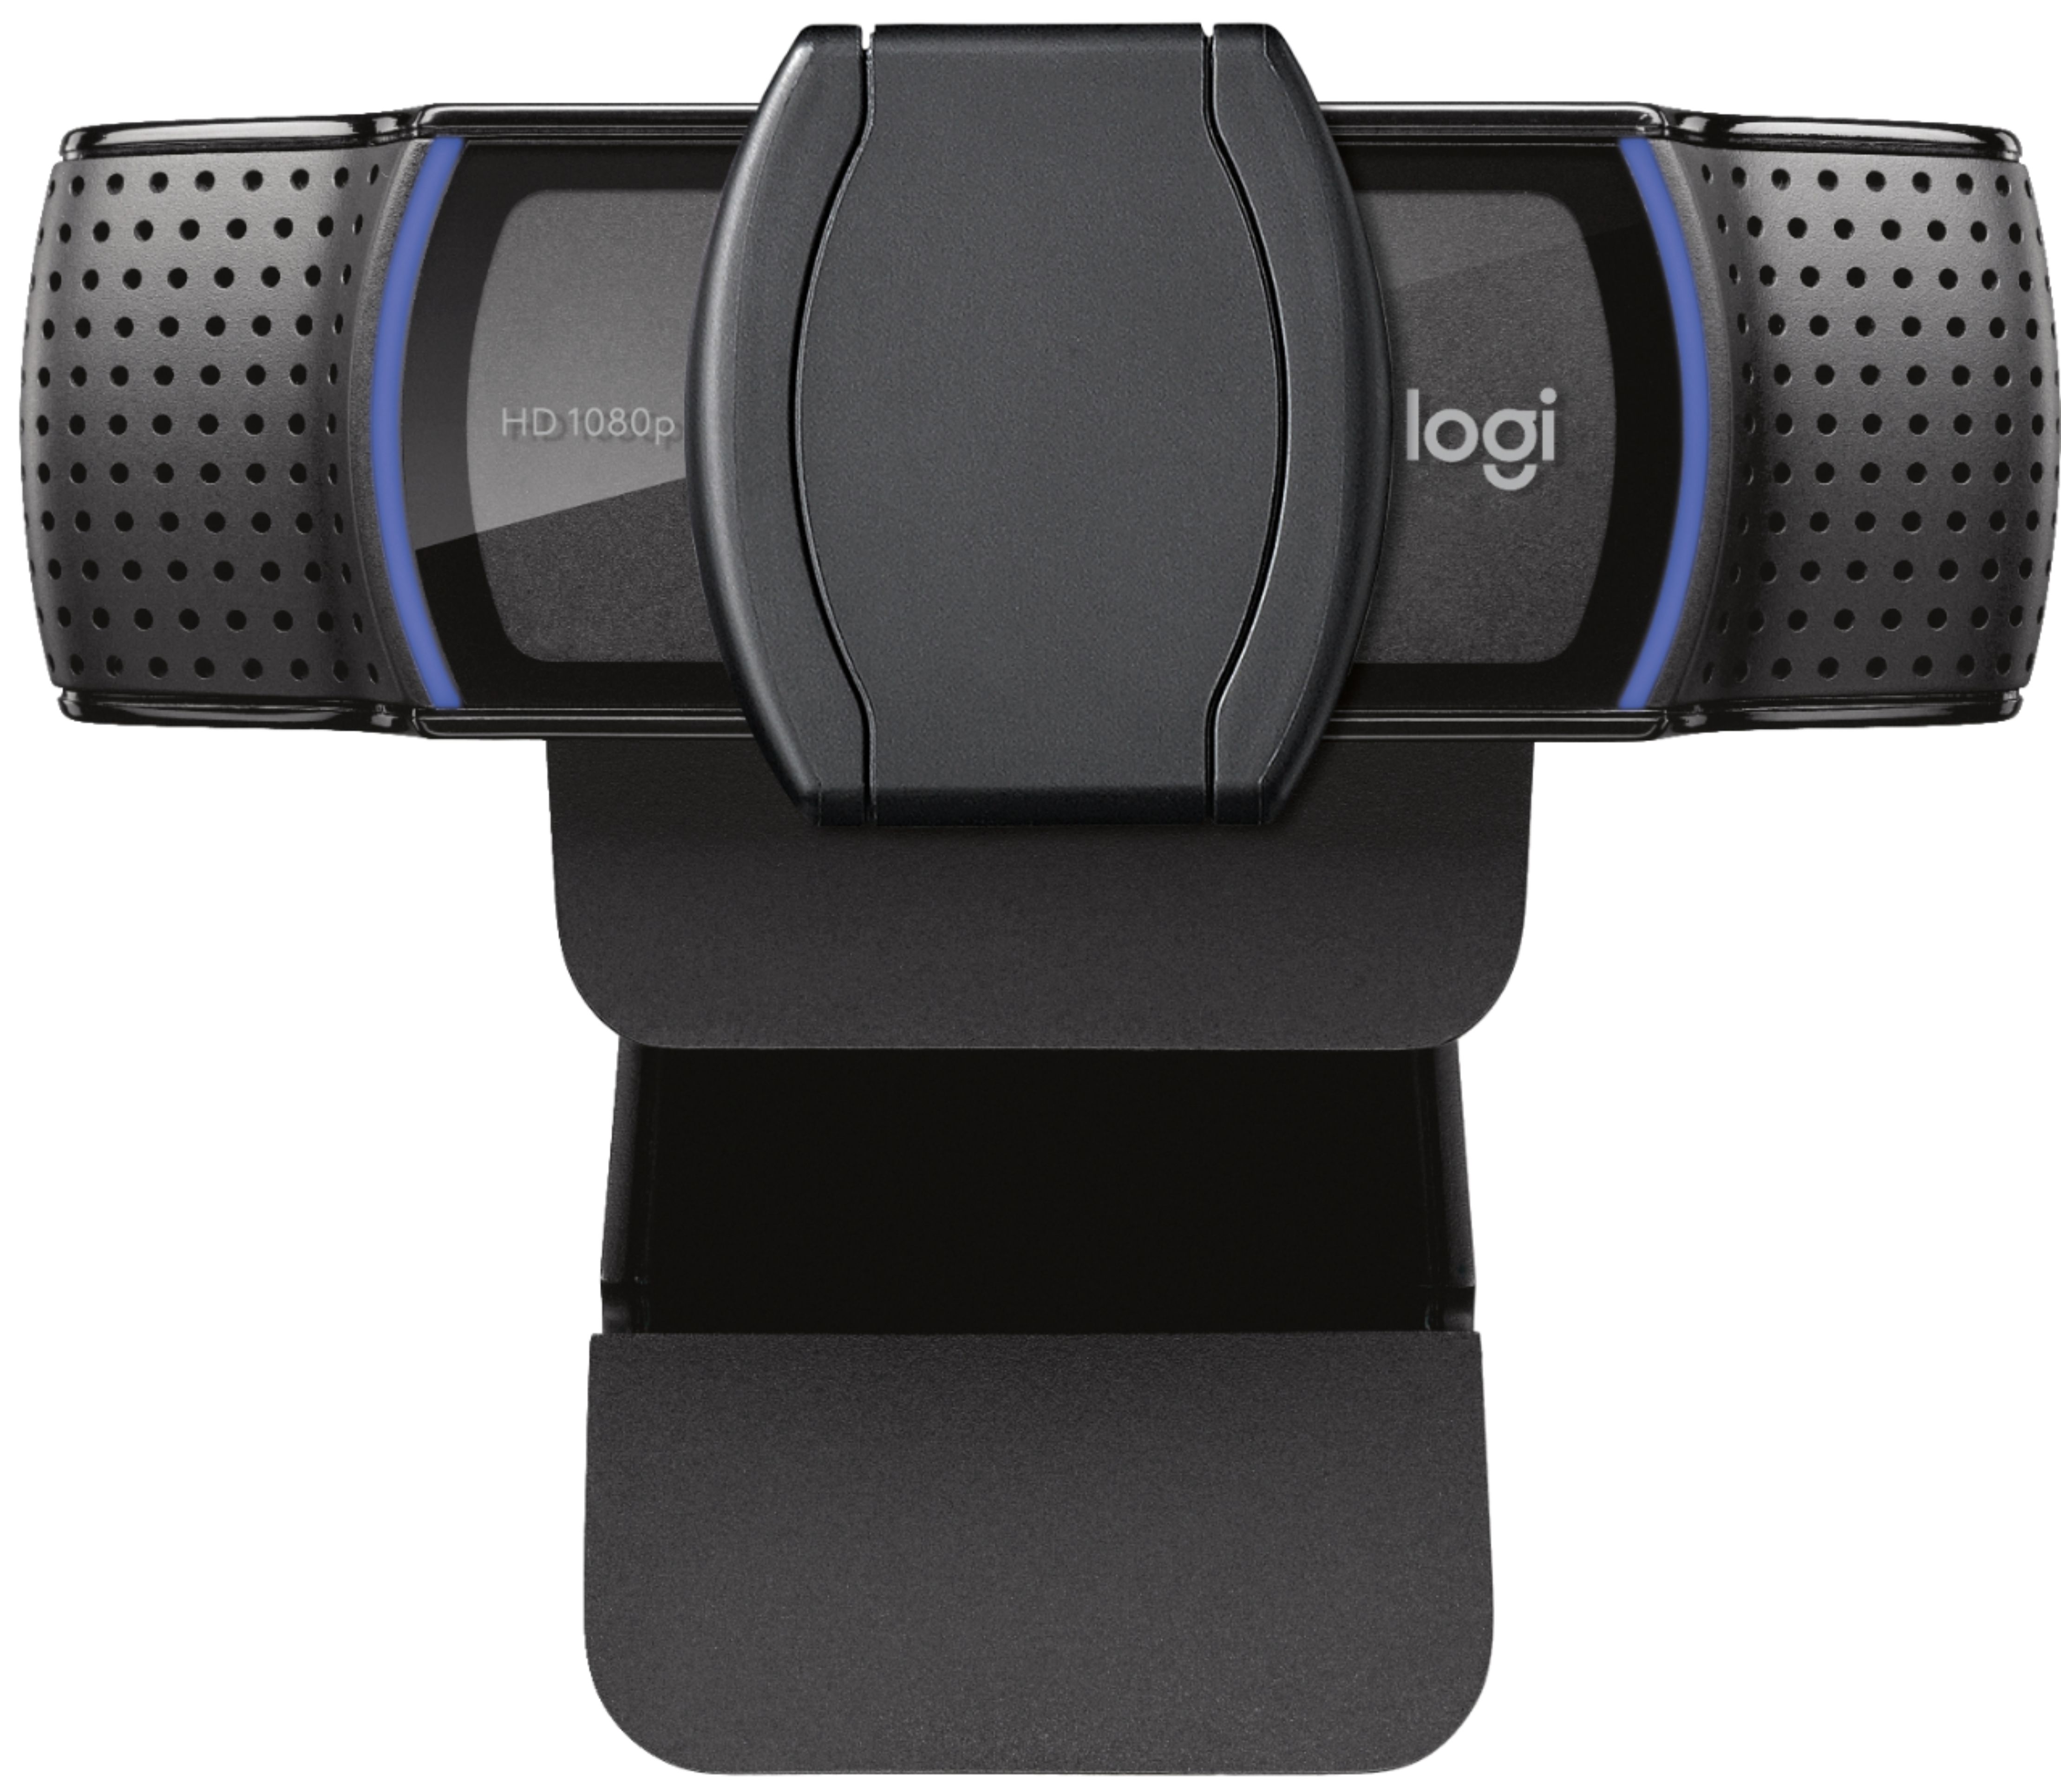 Webcam Pro Full Hd C920s 1080p 30 Fps Logitech Color Negro